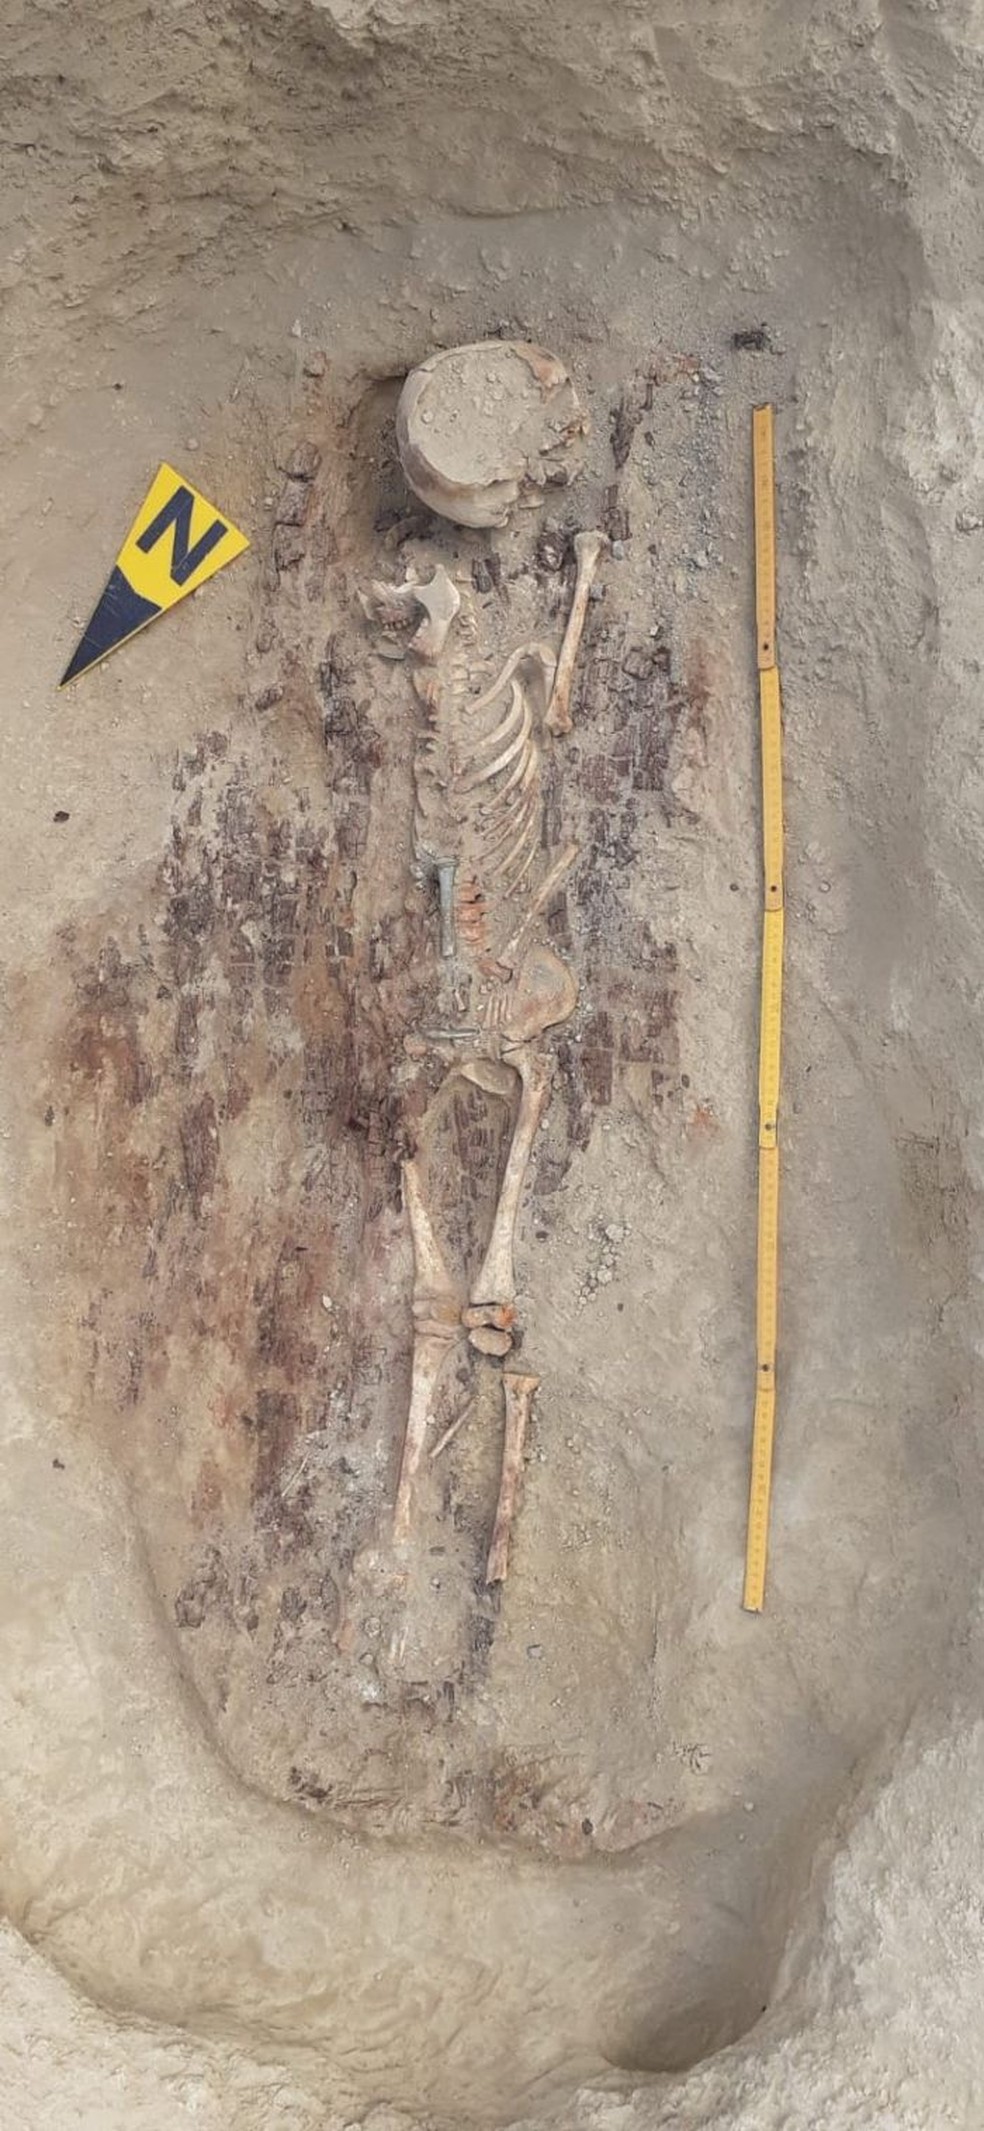 Fotografia do esqueleto encontrado na segunda tumba — Foto: V. Voine